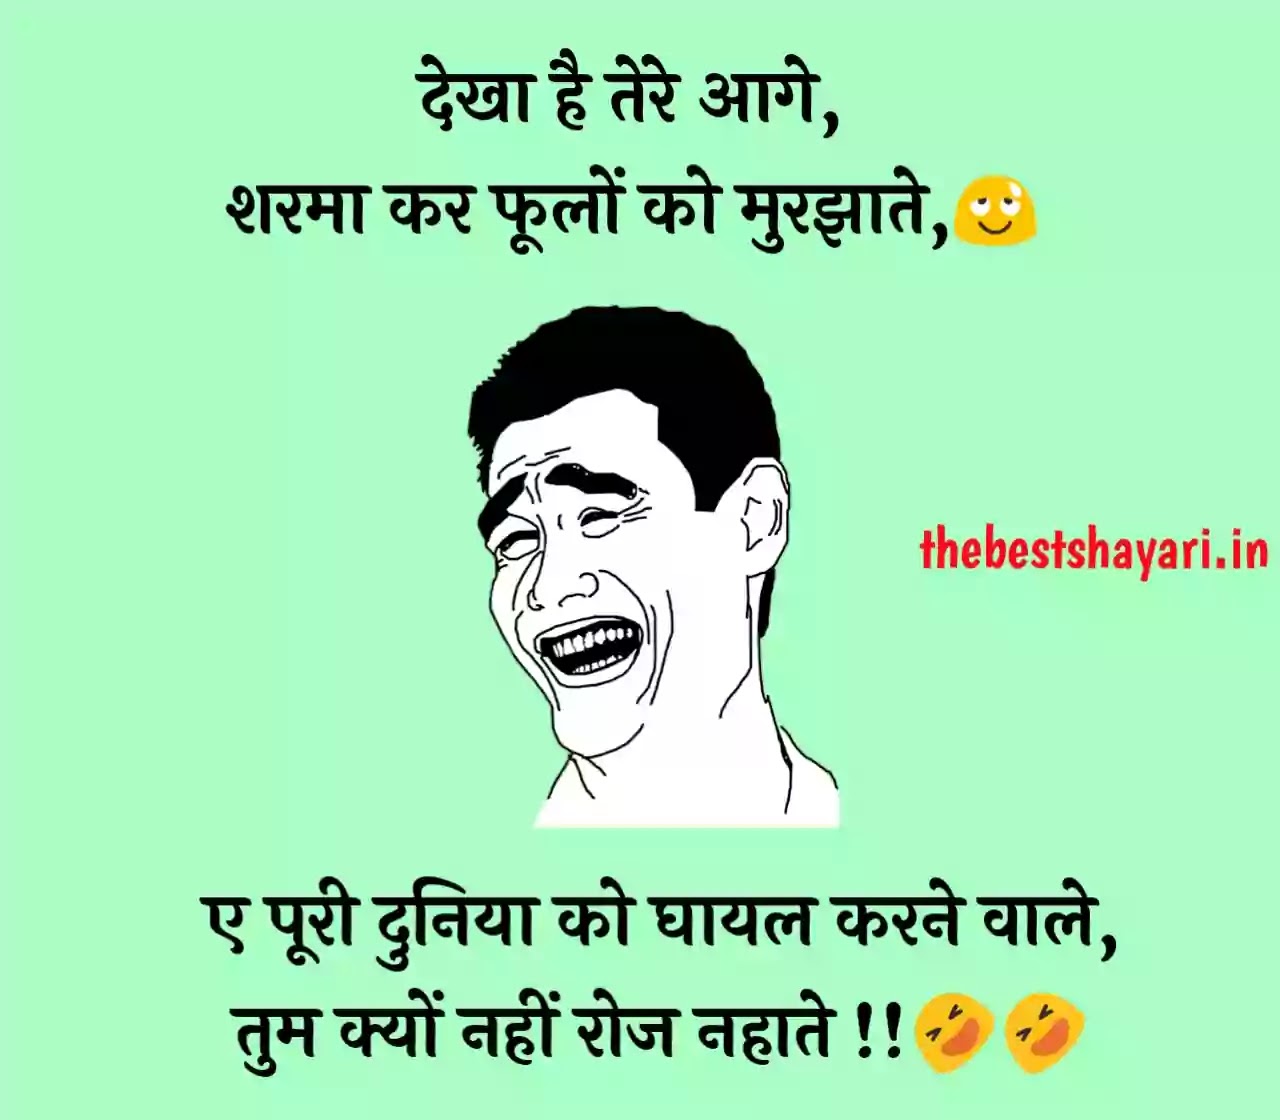 funny shayari in Hindi images